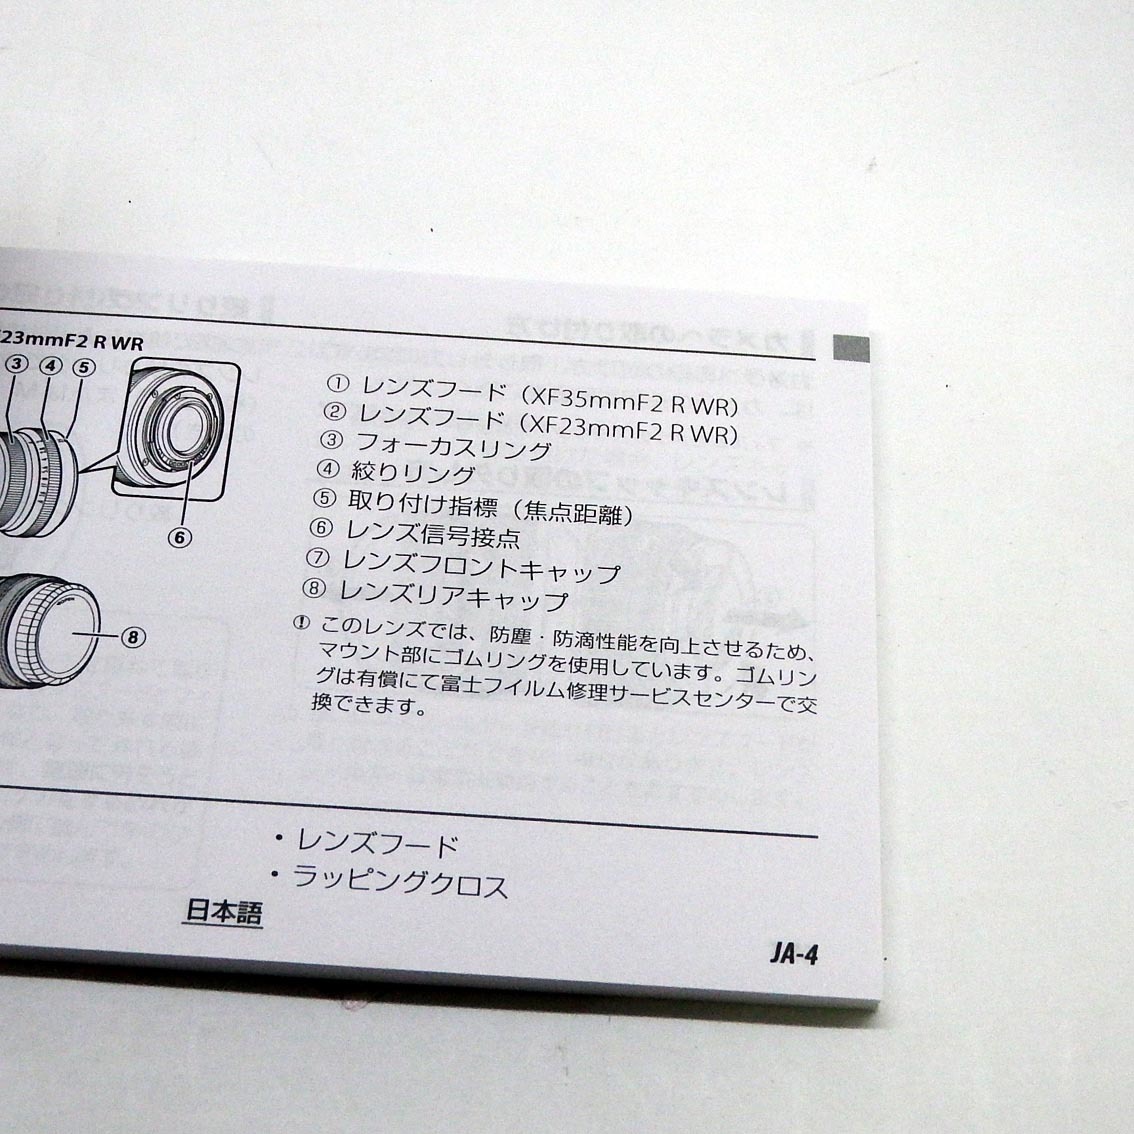 ACB5572 Fuji non линзы manual японский язык / много язык прекрасный товар 